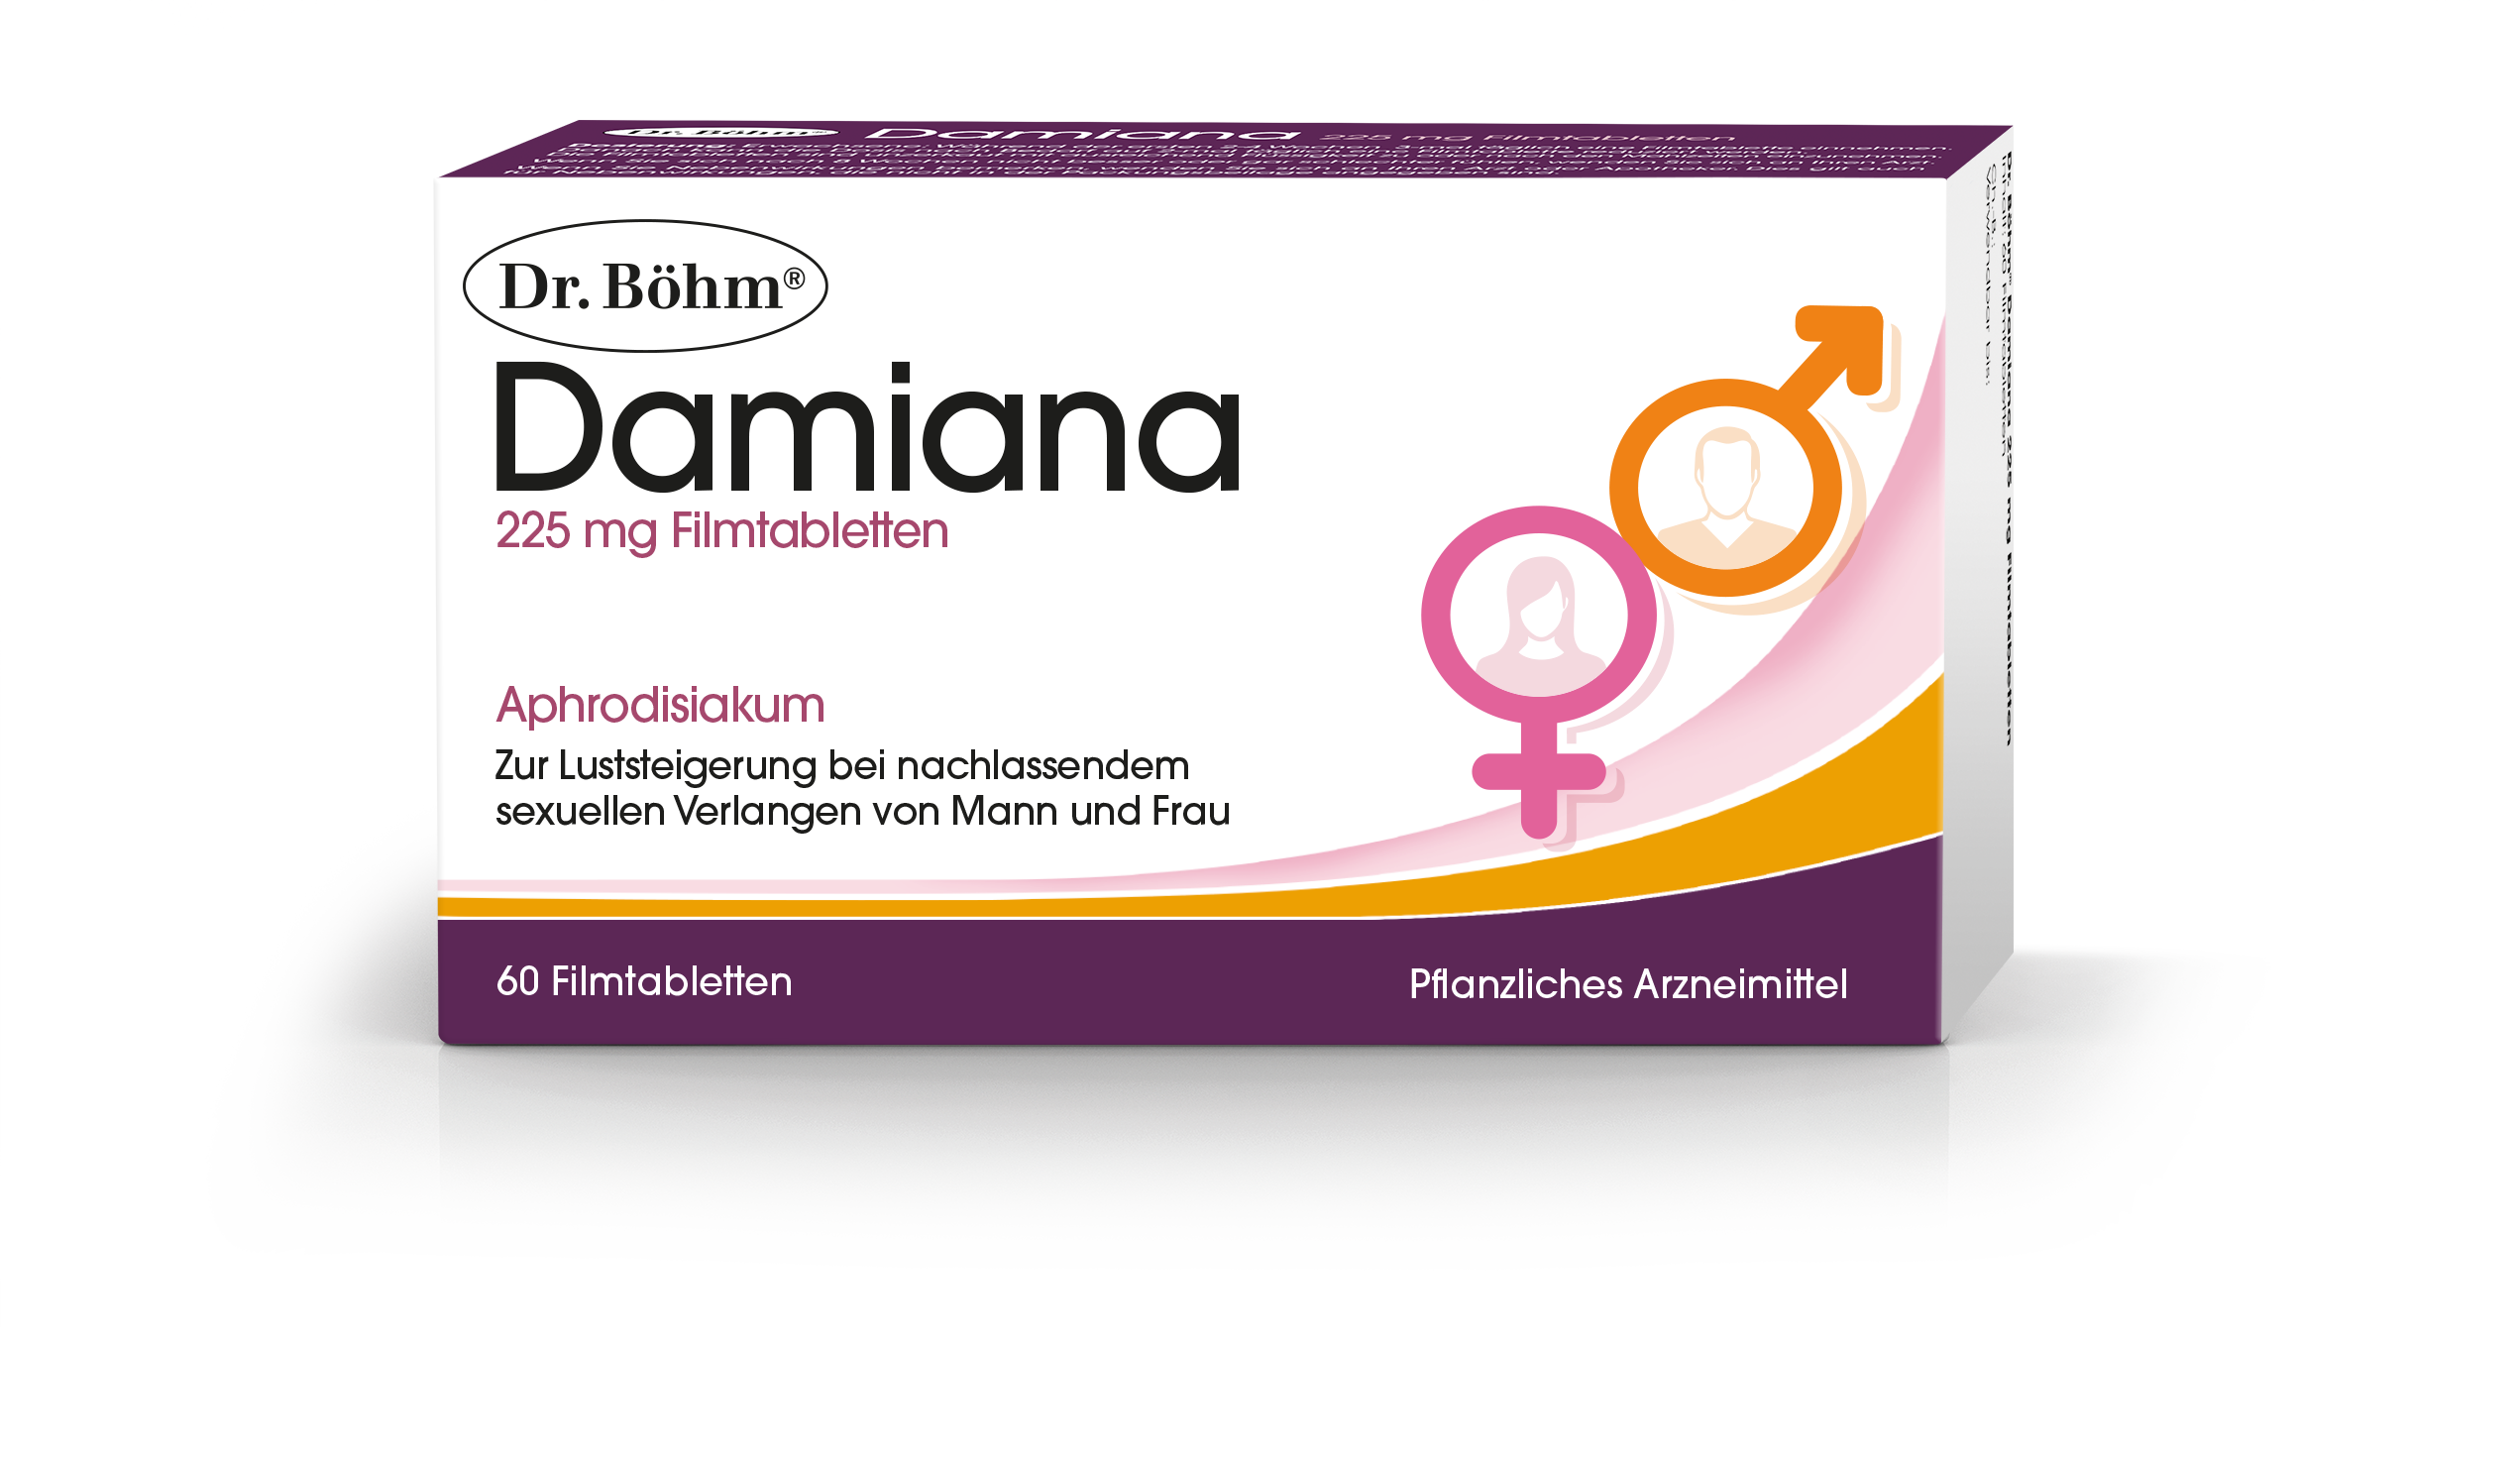 Abbildung Dr. Böhm Damiana 225 mg Filmtabletten